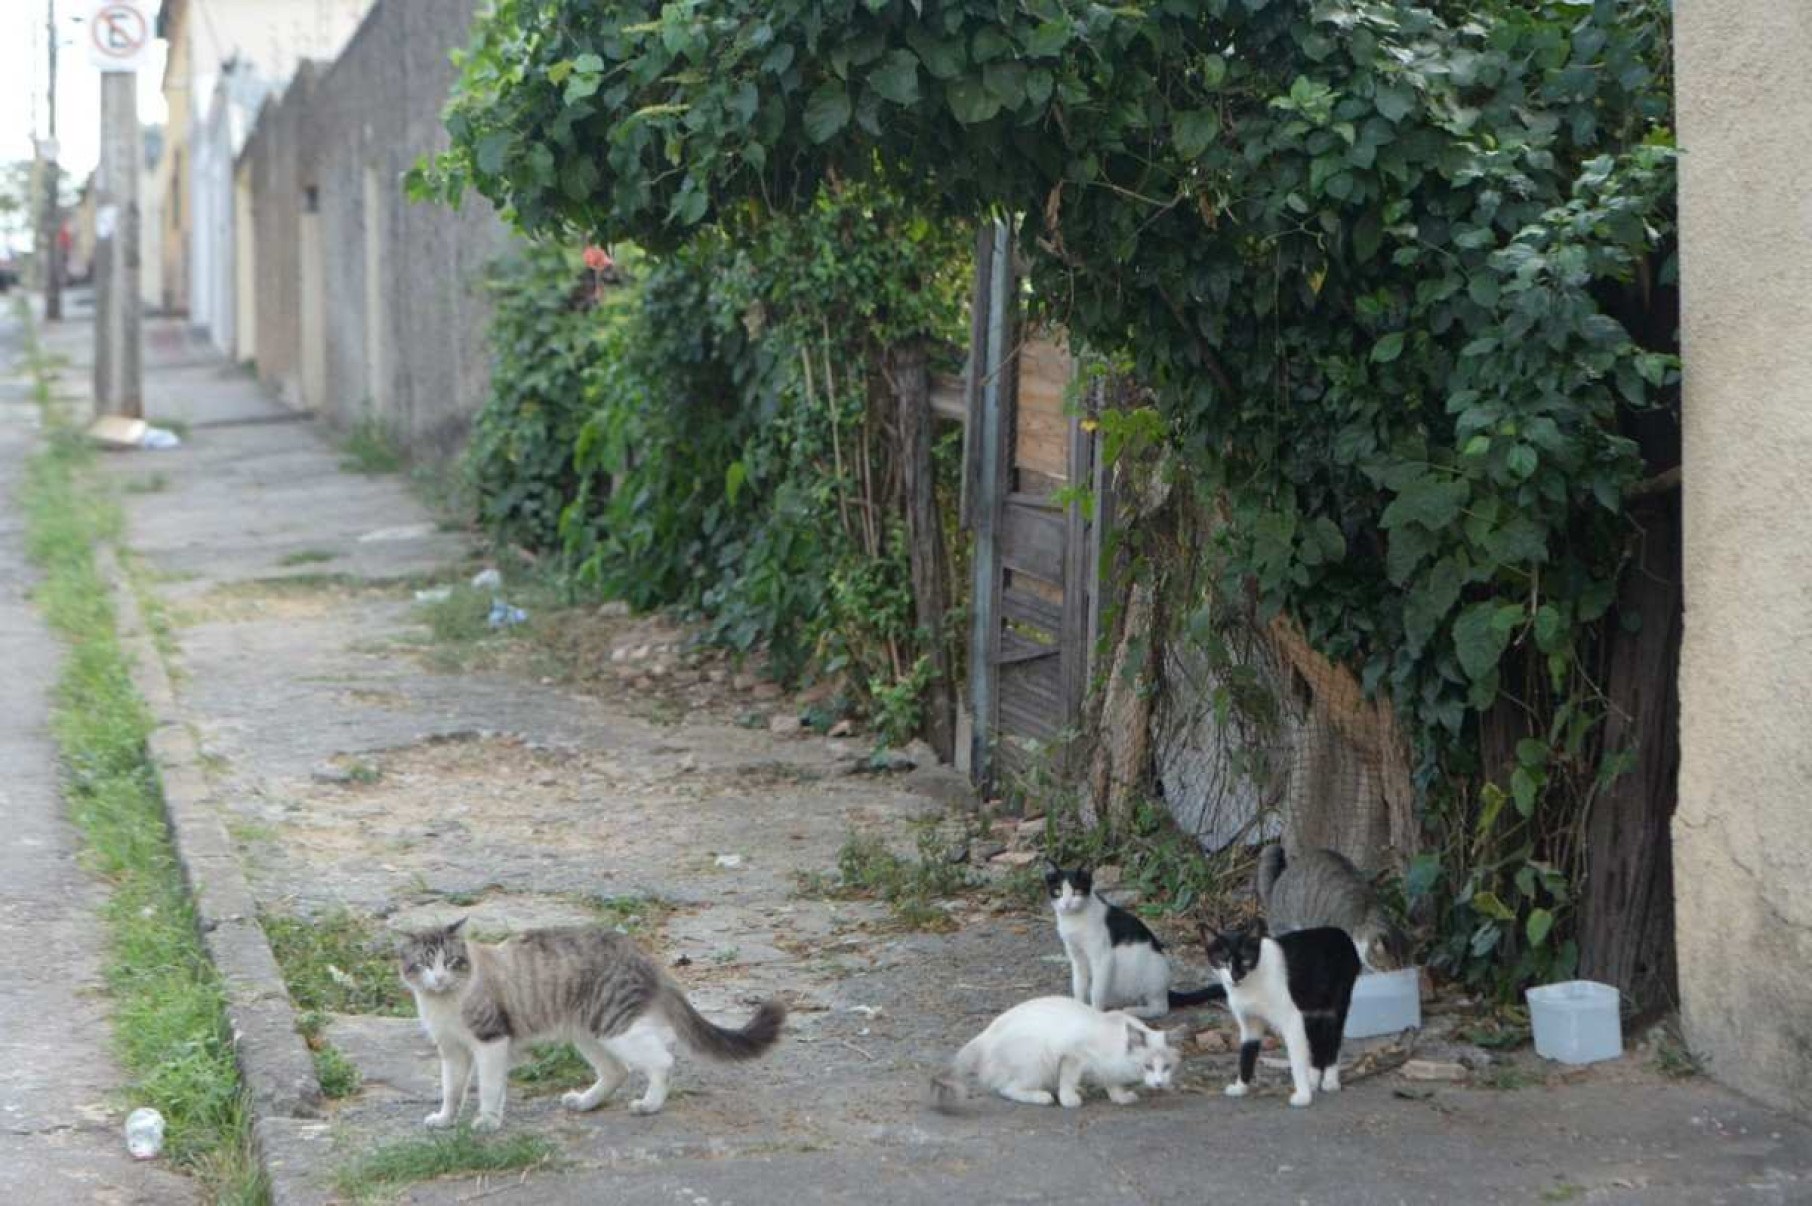 ‘Infestação de gatos’ em terreno preocupa moradores de bairro em BH